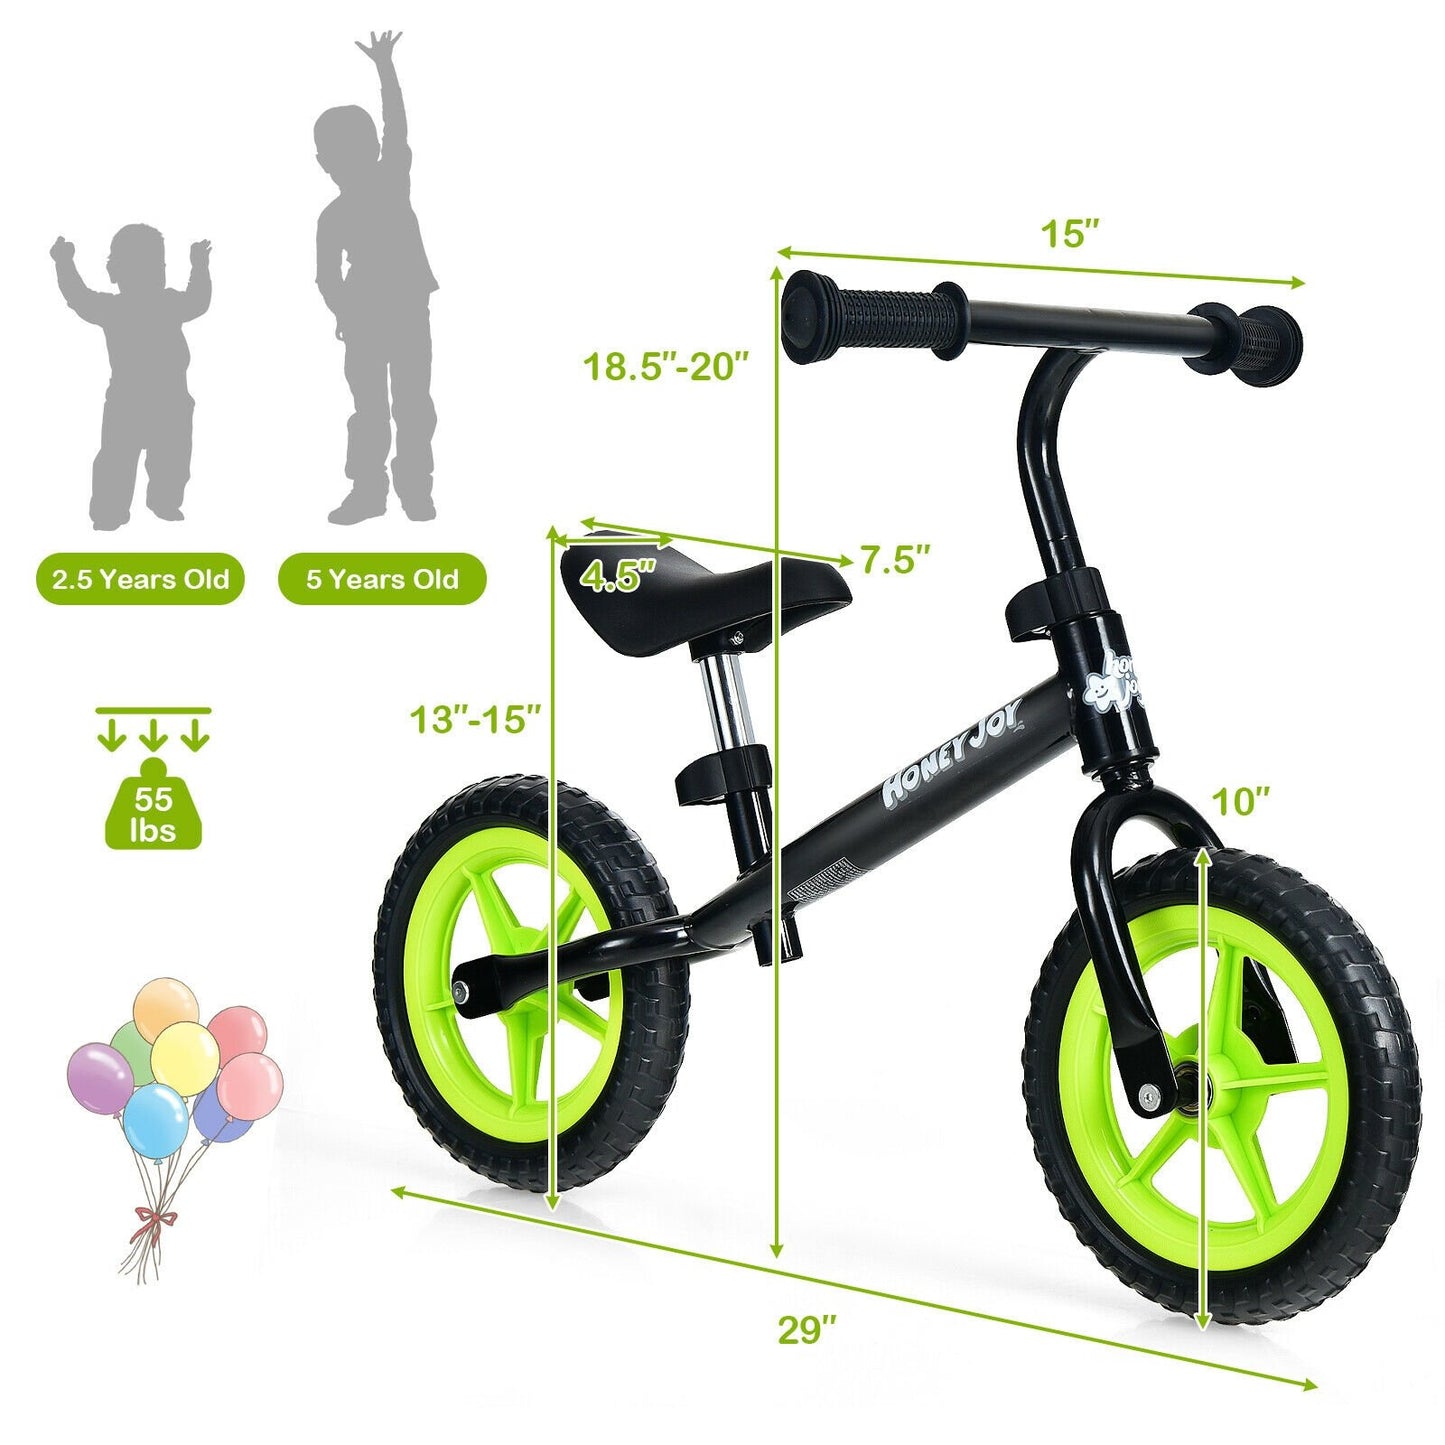 Kids No Pedal Balance Bike with Adjustable Handlebar and Seat, Black